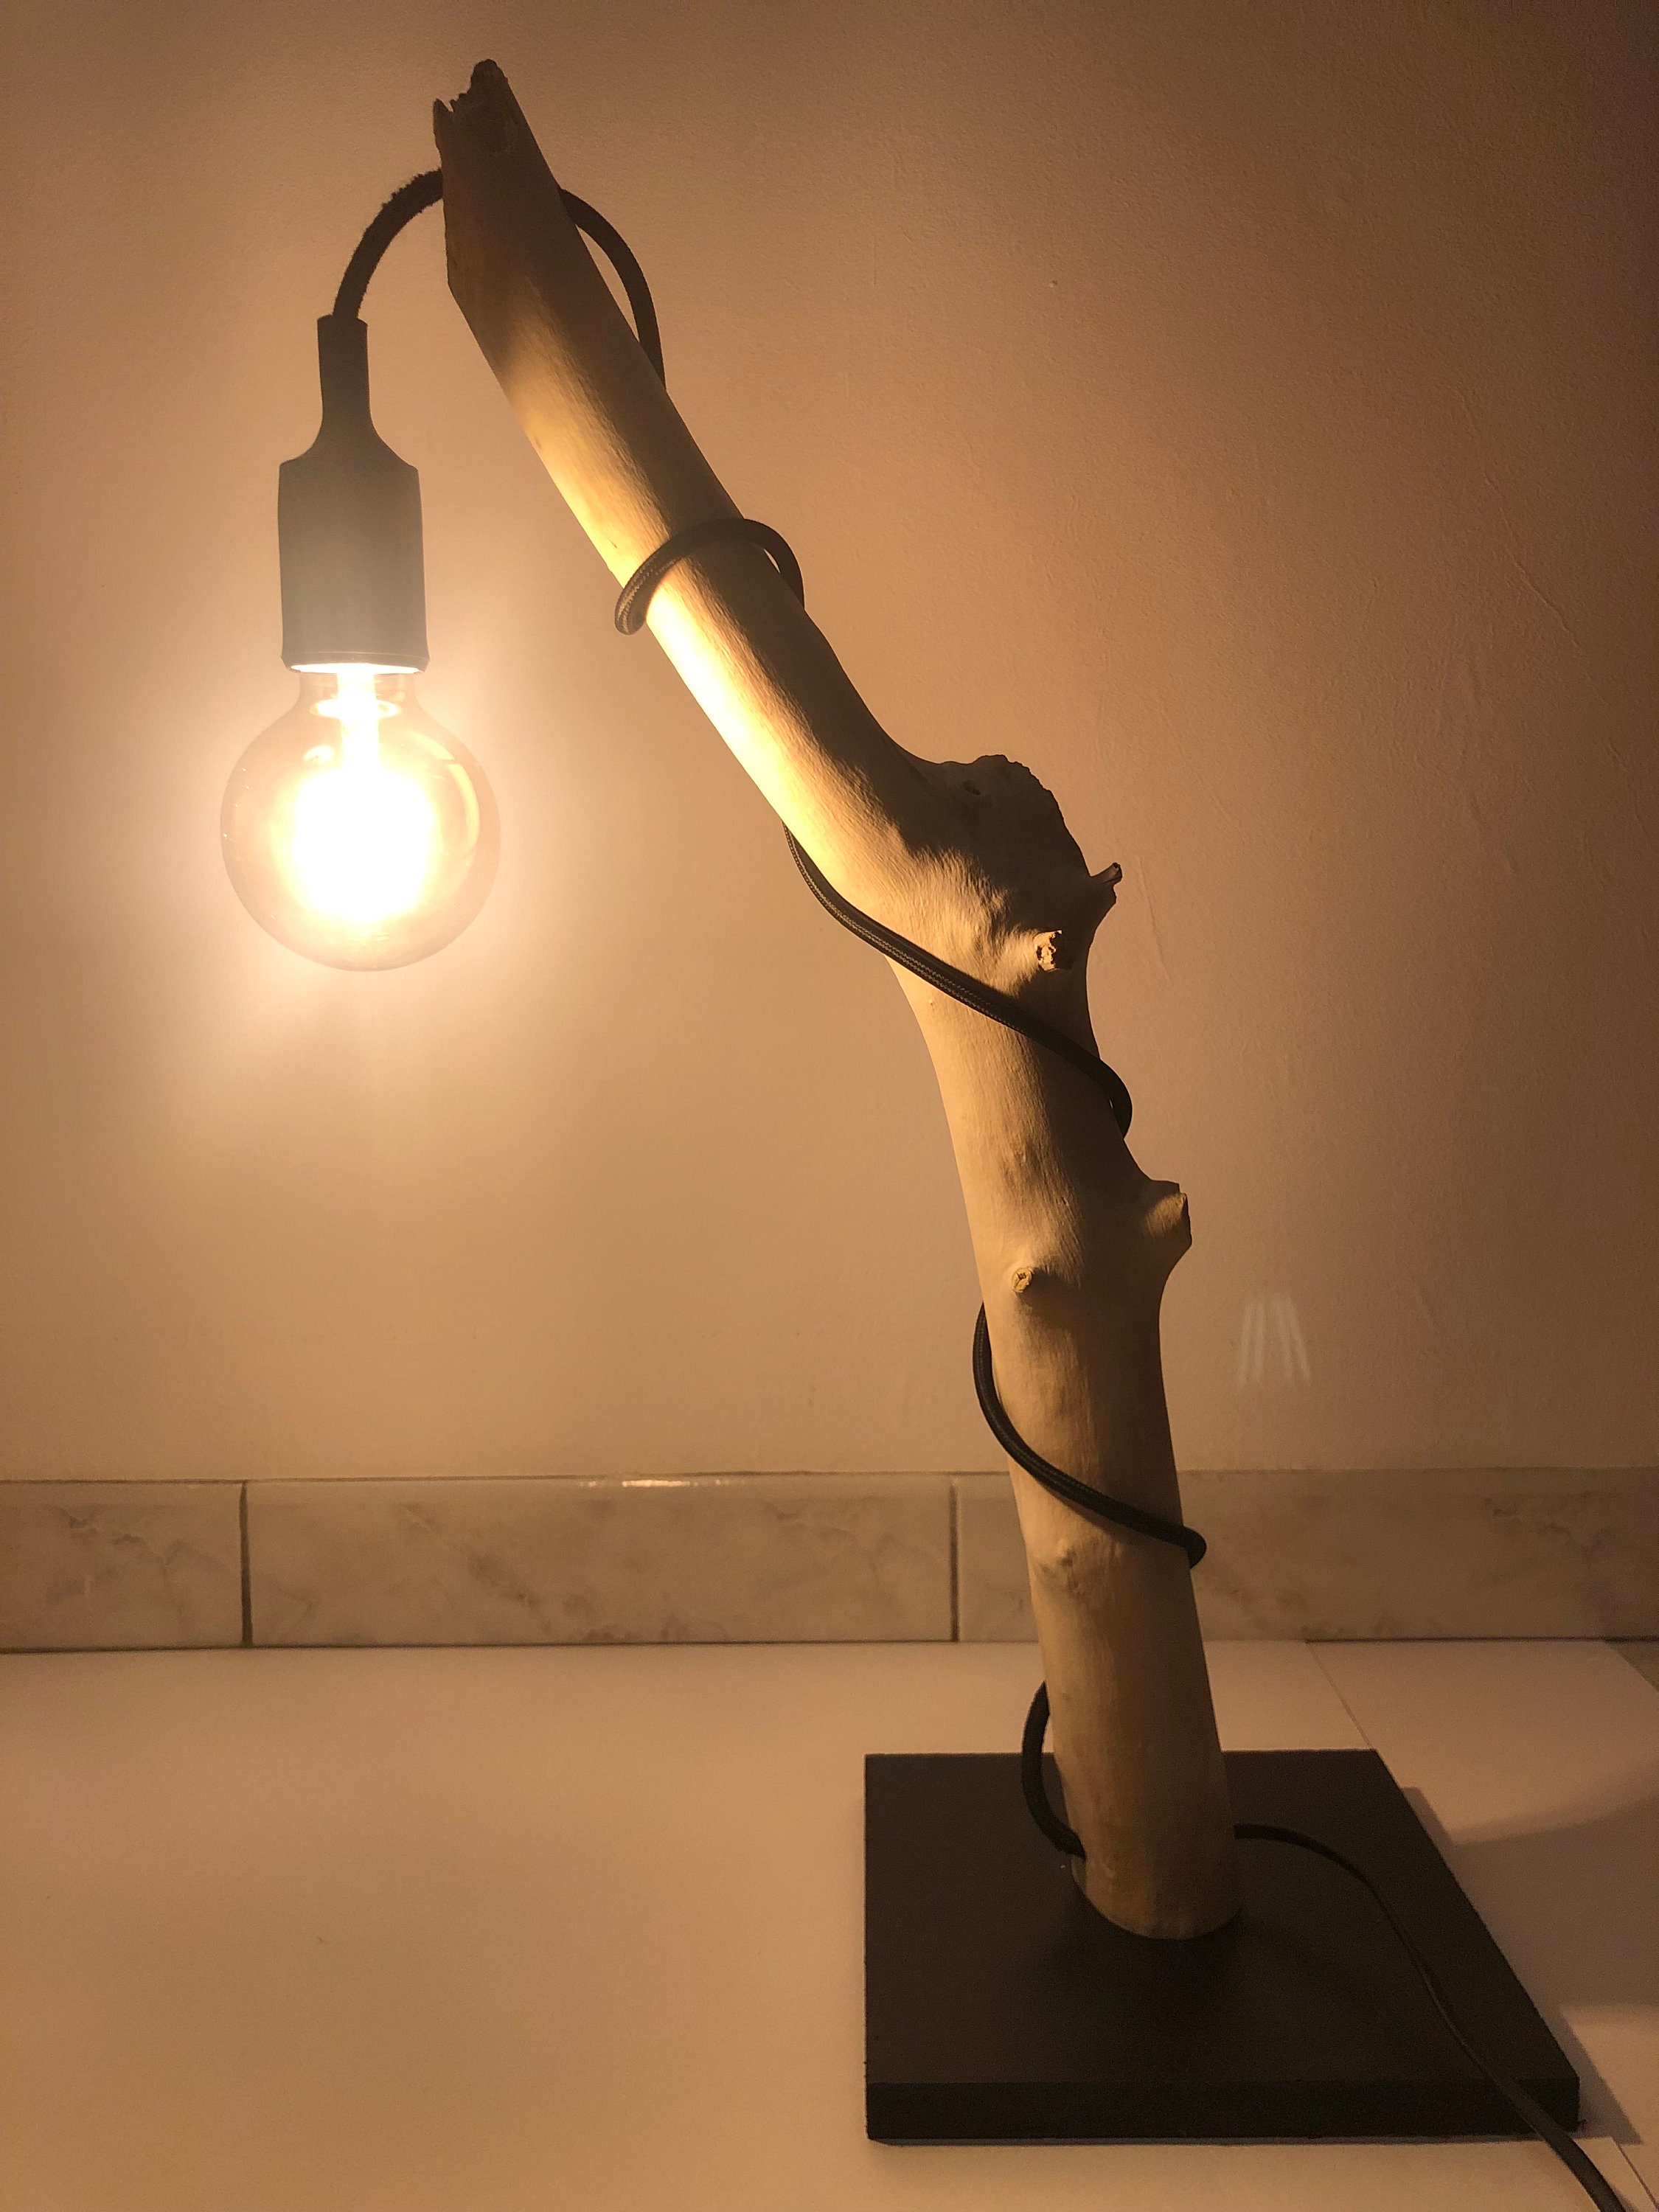 Lampe bois flotté - Lampe design - déco loft